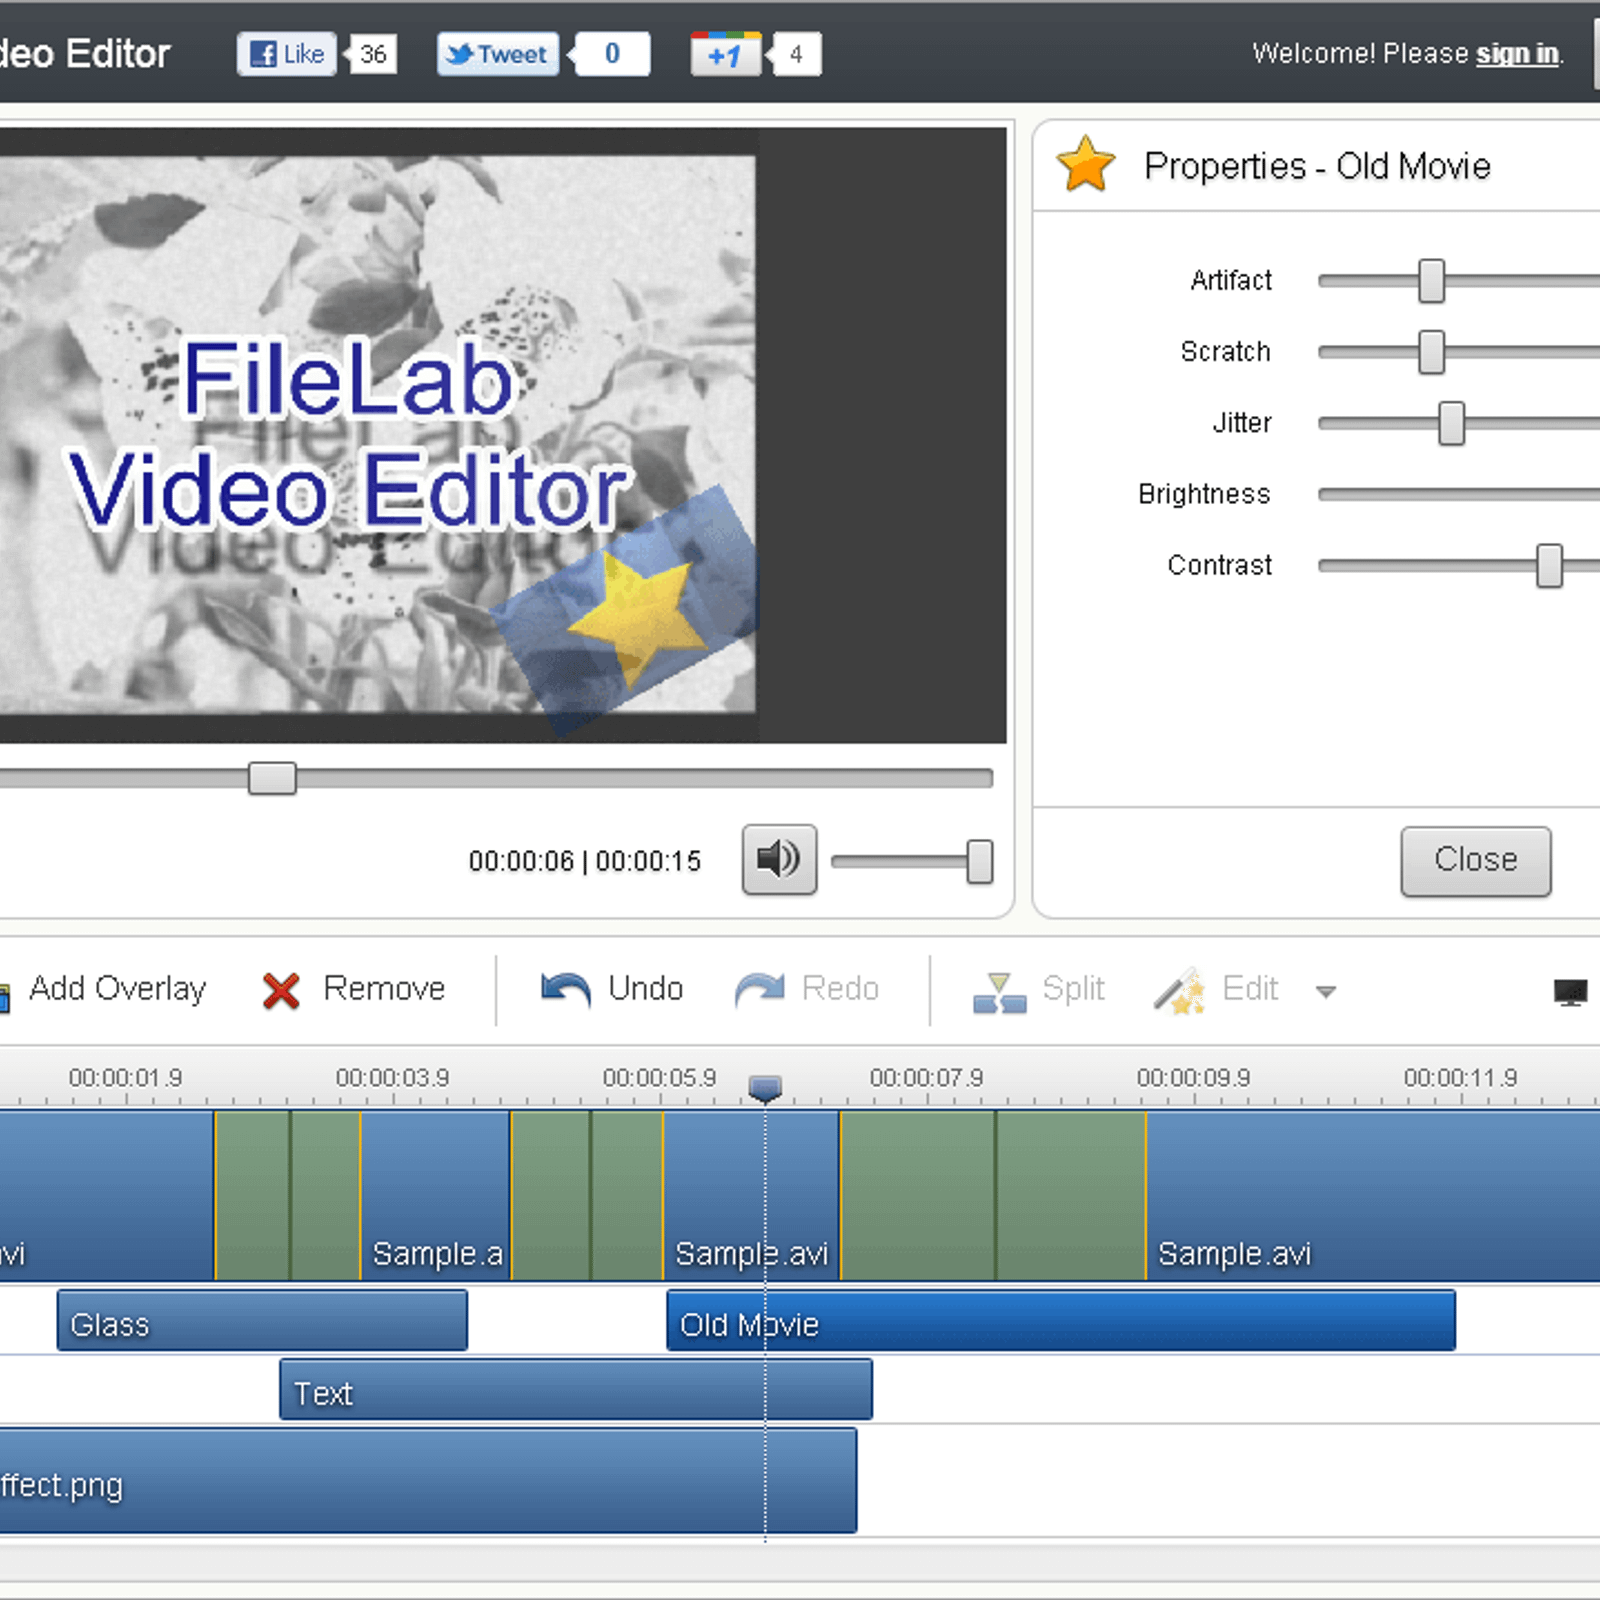 FileLab Video Editor Alternatives and Similar Websites and Apps - AlternativeTo.net